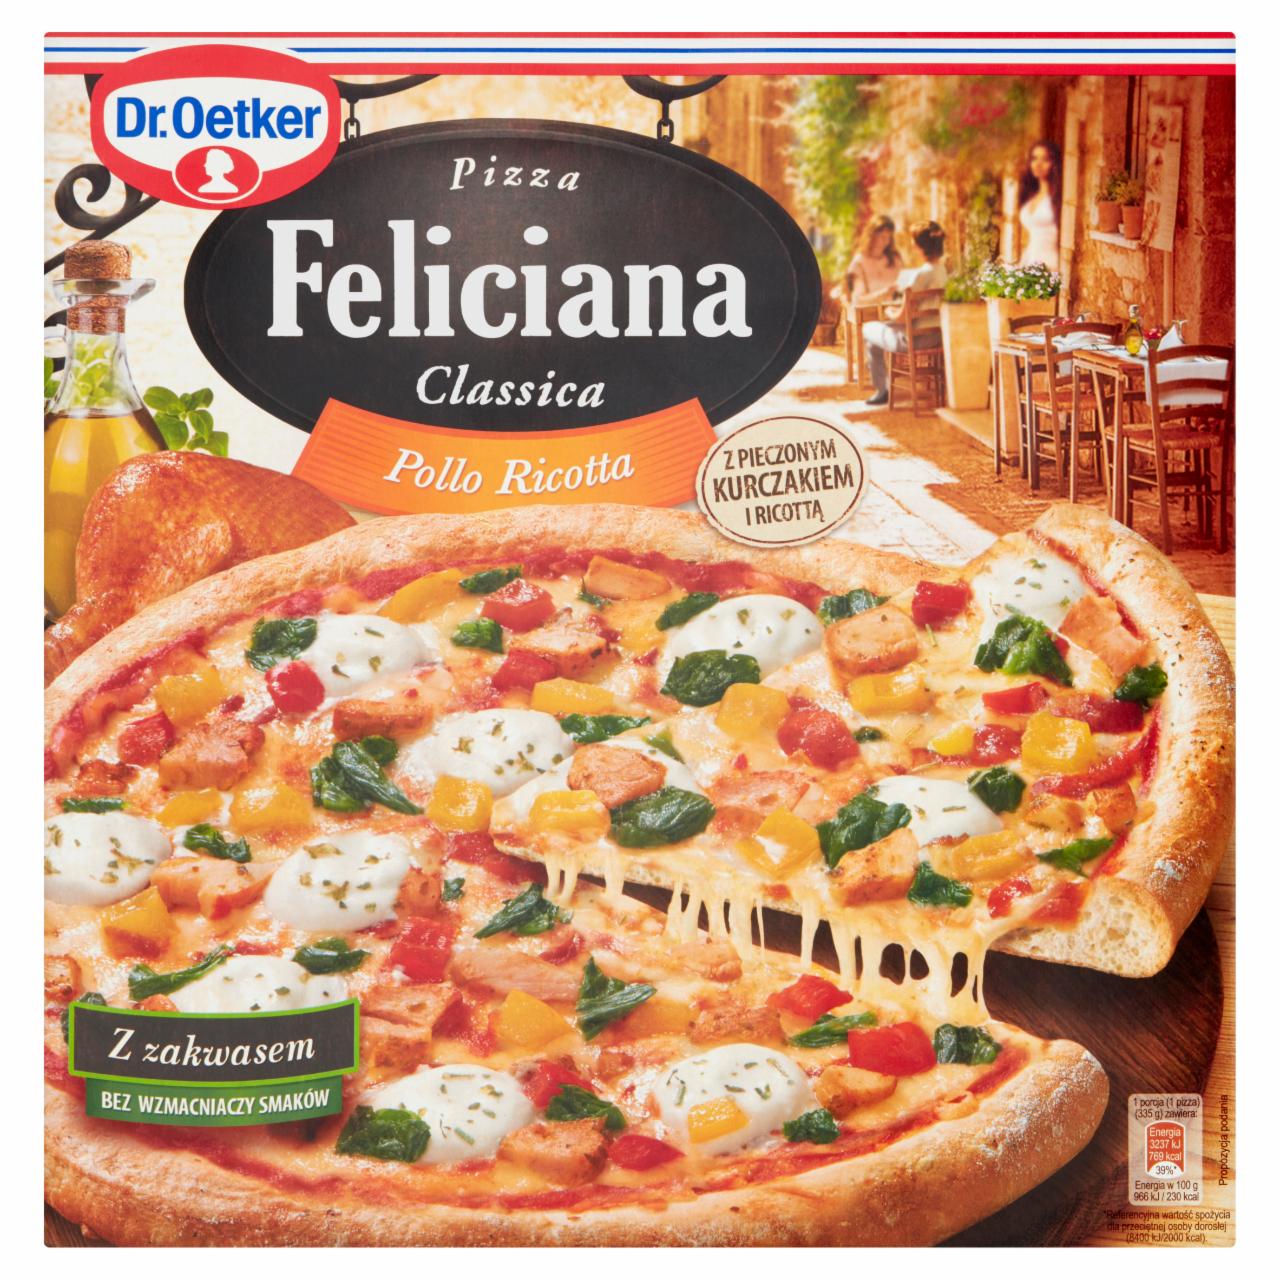 Zdjęcia - Dr. Oetker Feliciana Classica Pizza Pollo Ricotta 335 g